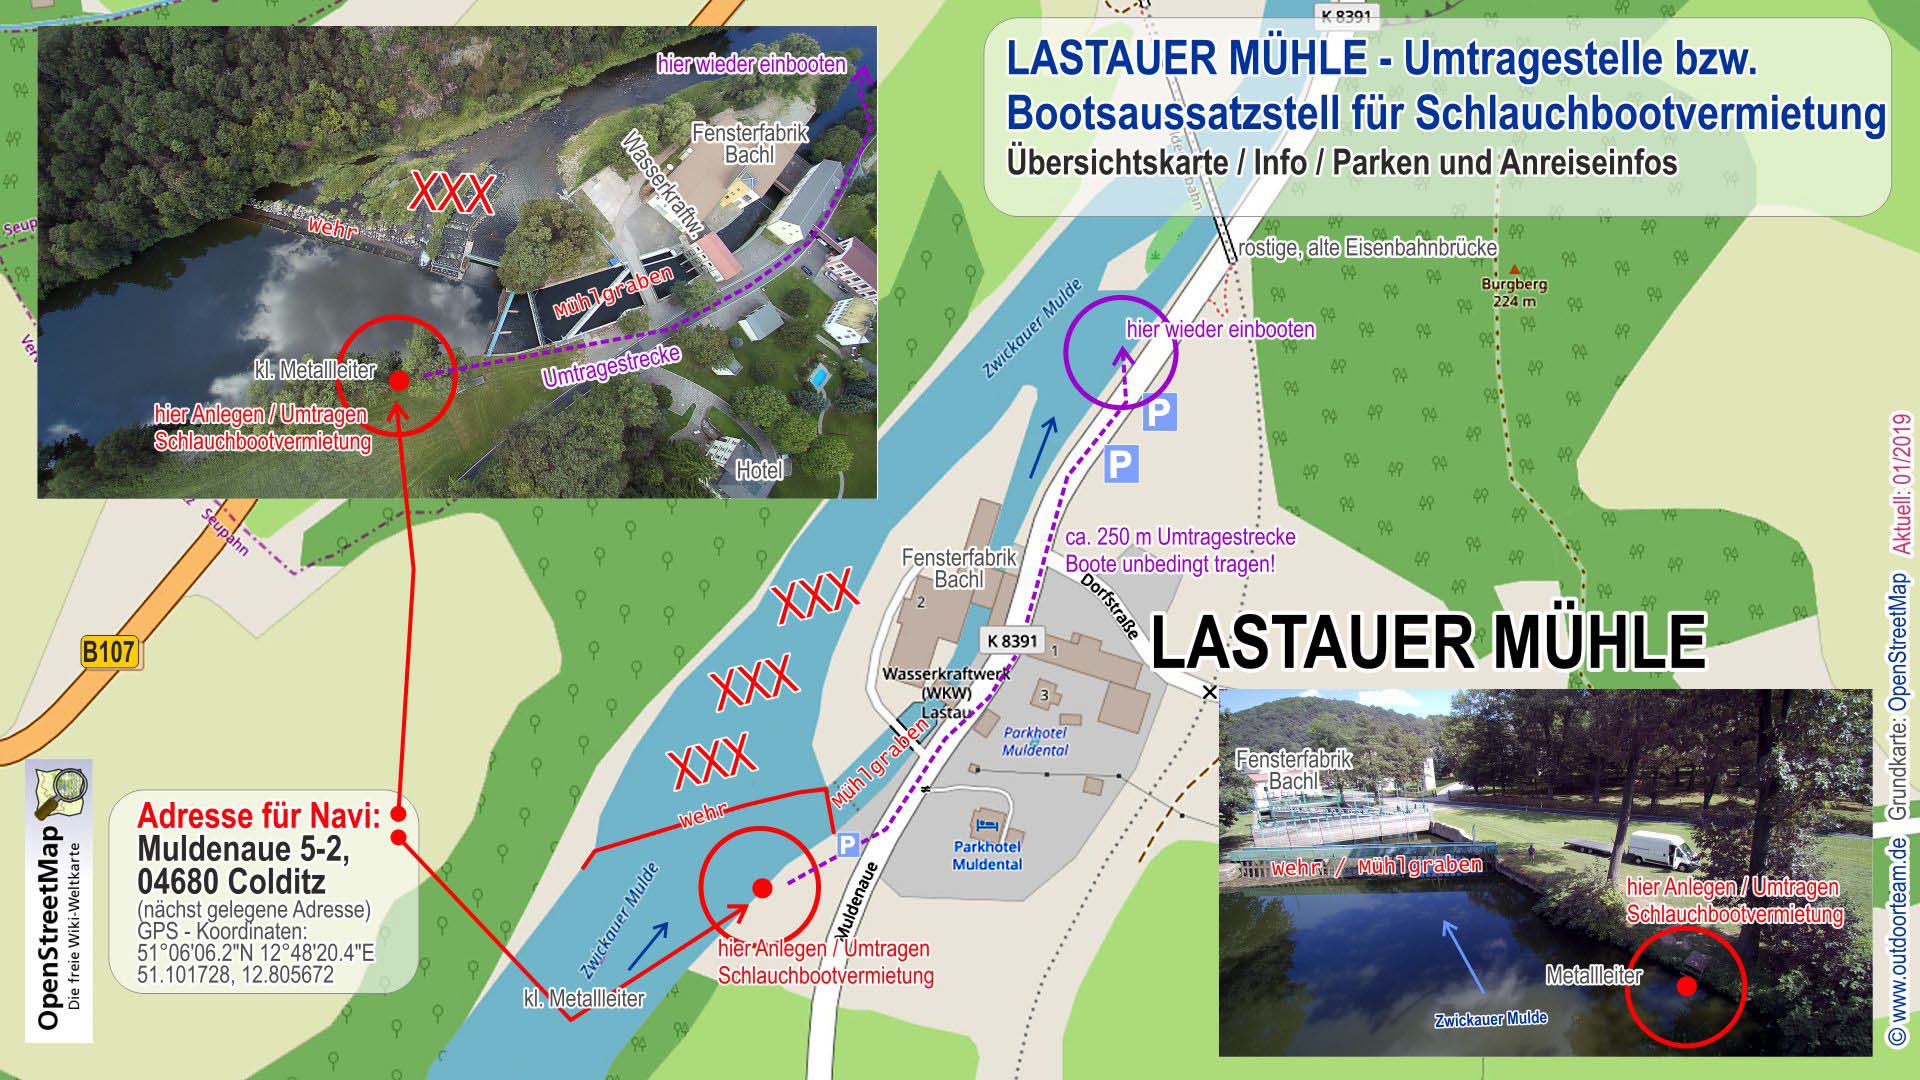 Schlauchbootvermietung Detailkarte Lastauer Mühle Umtragestelle 2 am Fluss Zwickauer Mulde